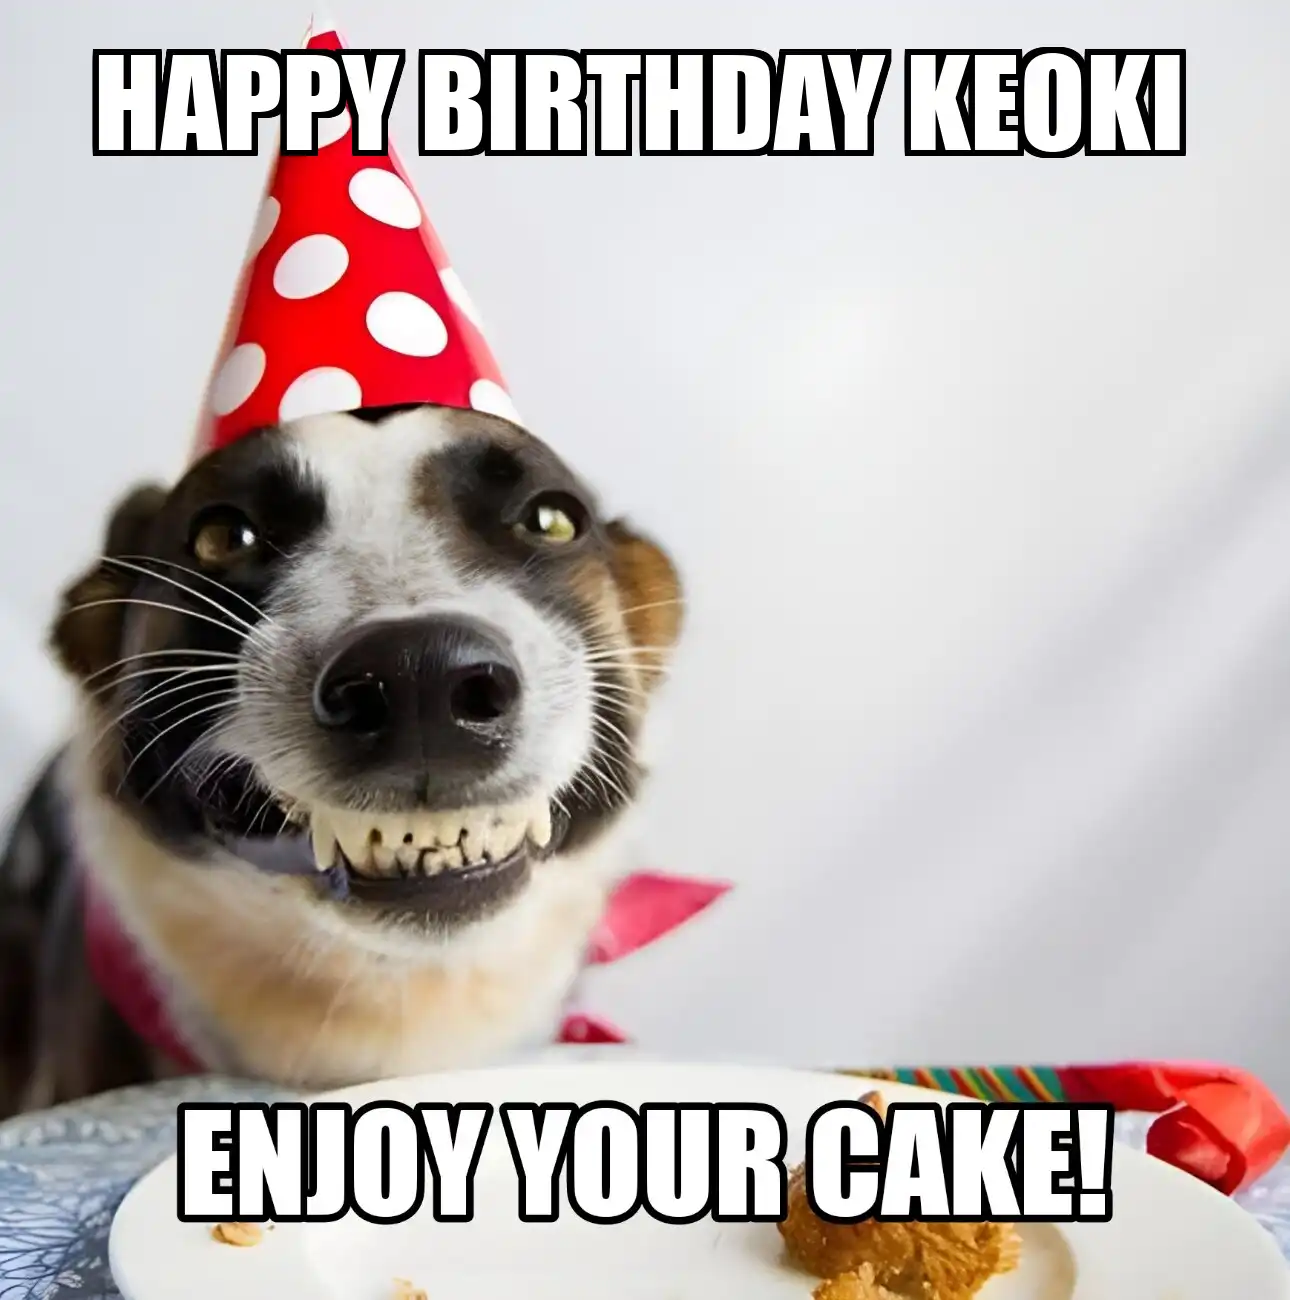 Happy Birthday Keoki Enjoy Your Cake Dog Meme